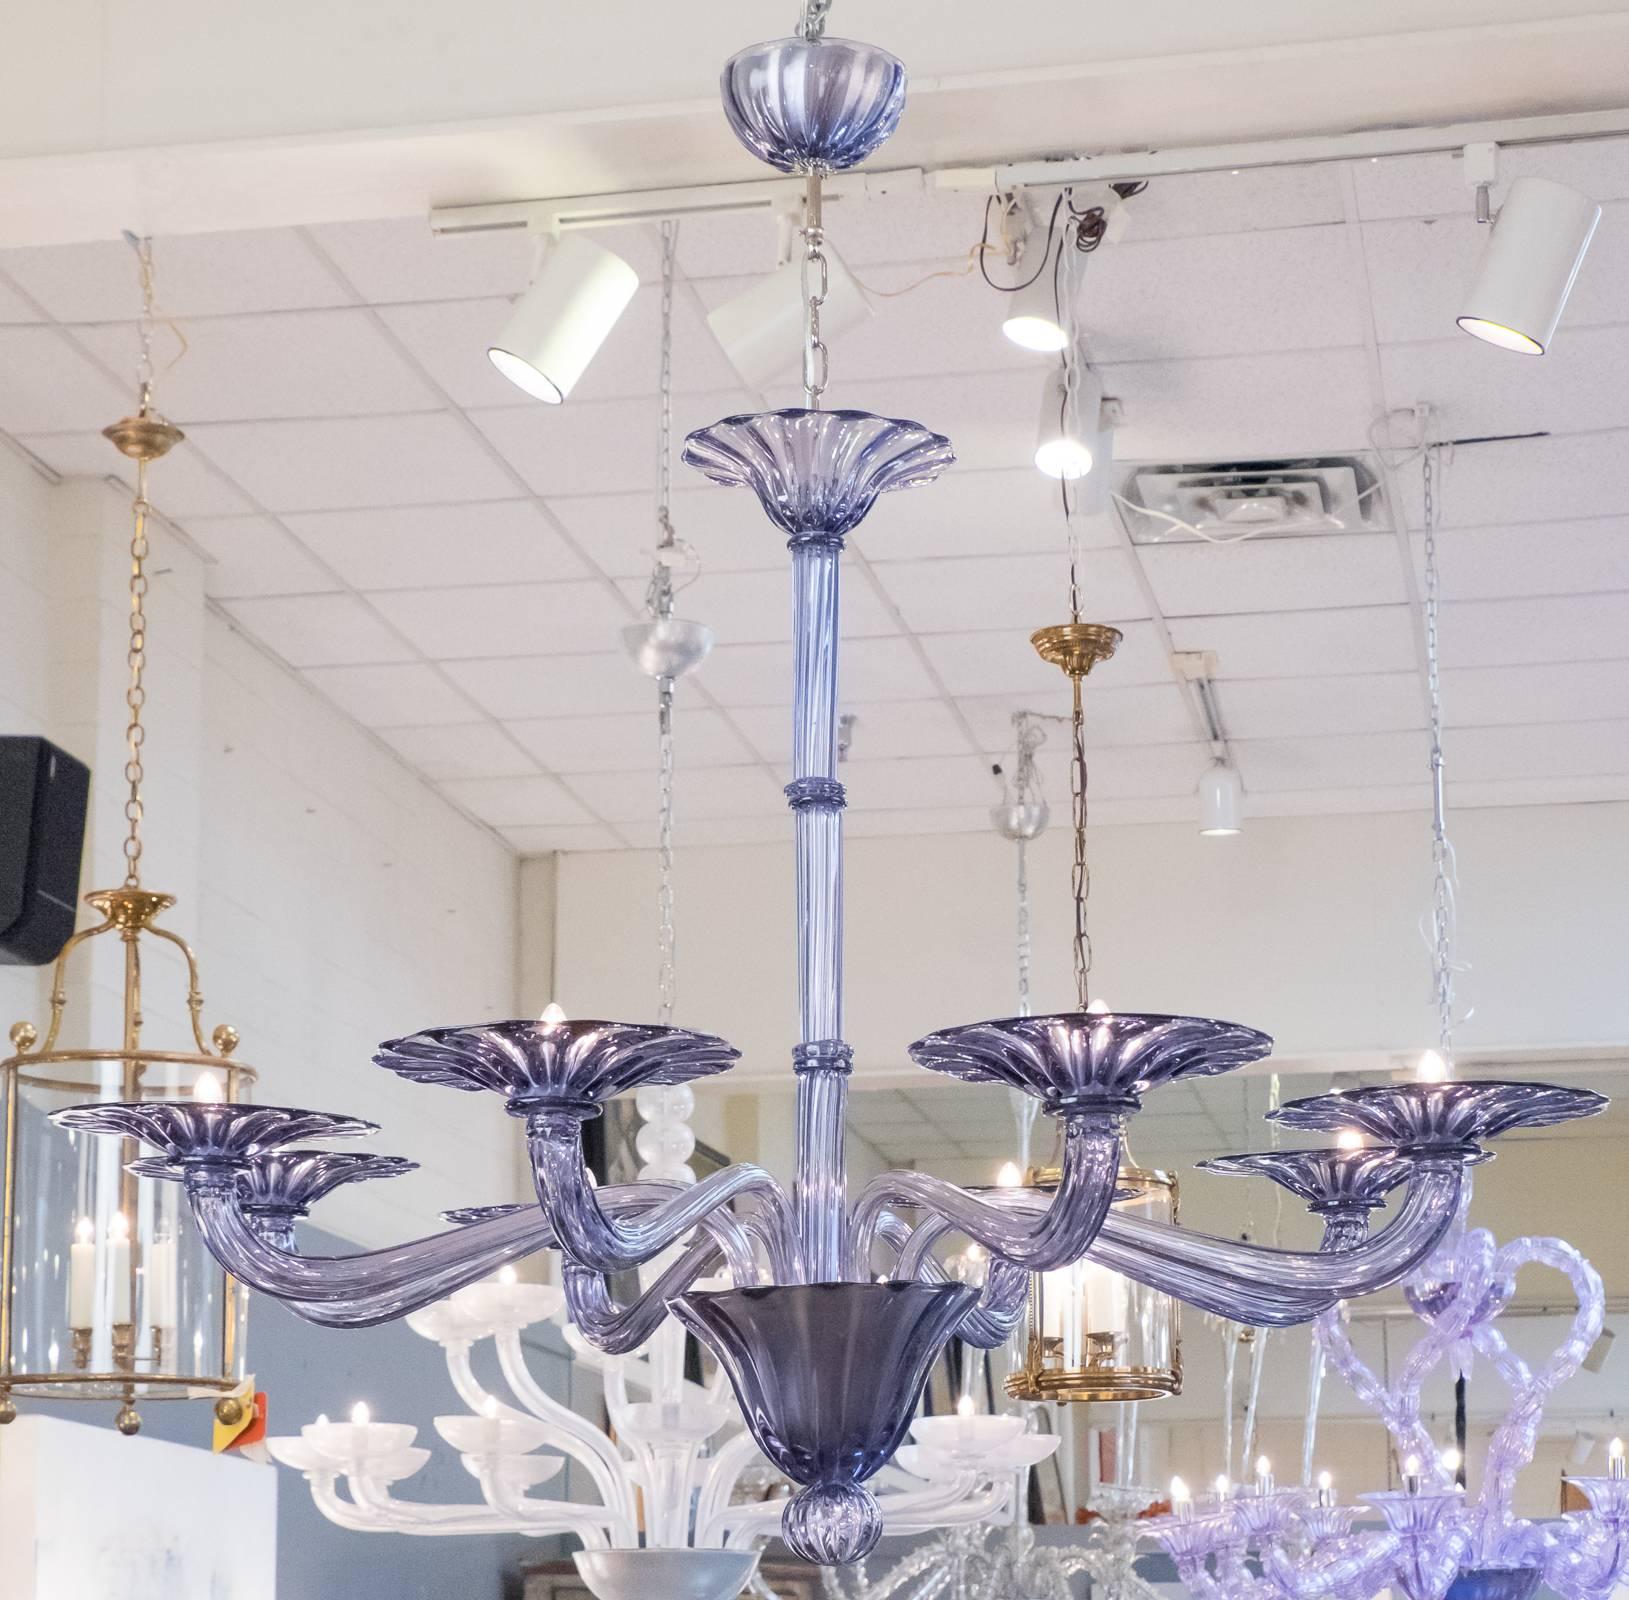 Prächtiger Kronleuchter aus mundgeblasenem Muranoglas in hellem Violett mit acht Zweigen, die perfekte Kombination aus klassischer Handwerkskunst und Modernität.
Die Höhe einschließlich der Kette und des zweiten Baldachins beträgt 49,25